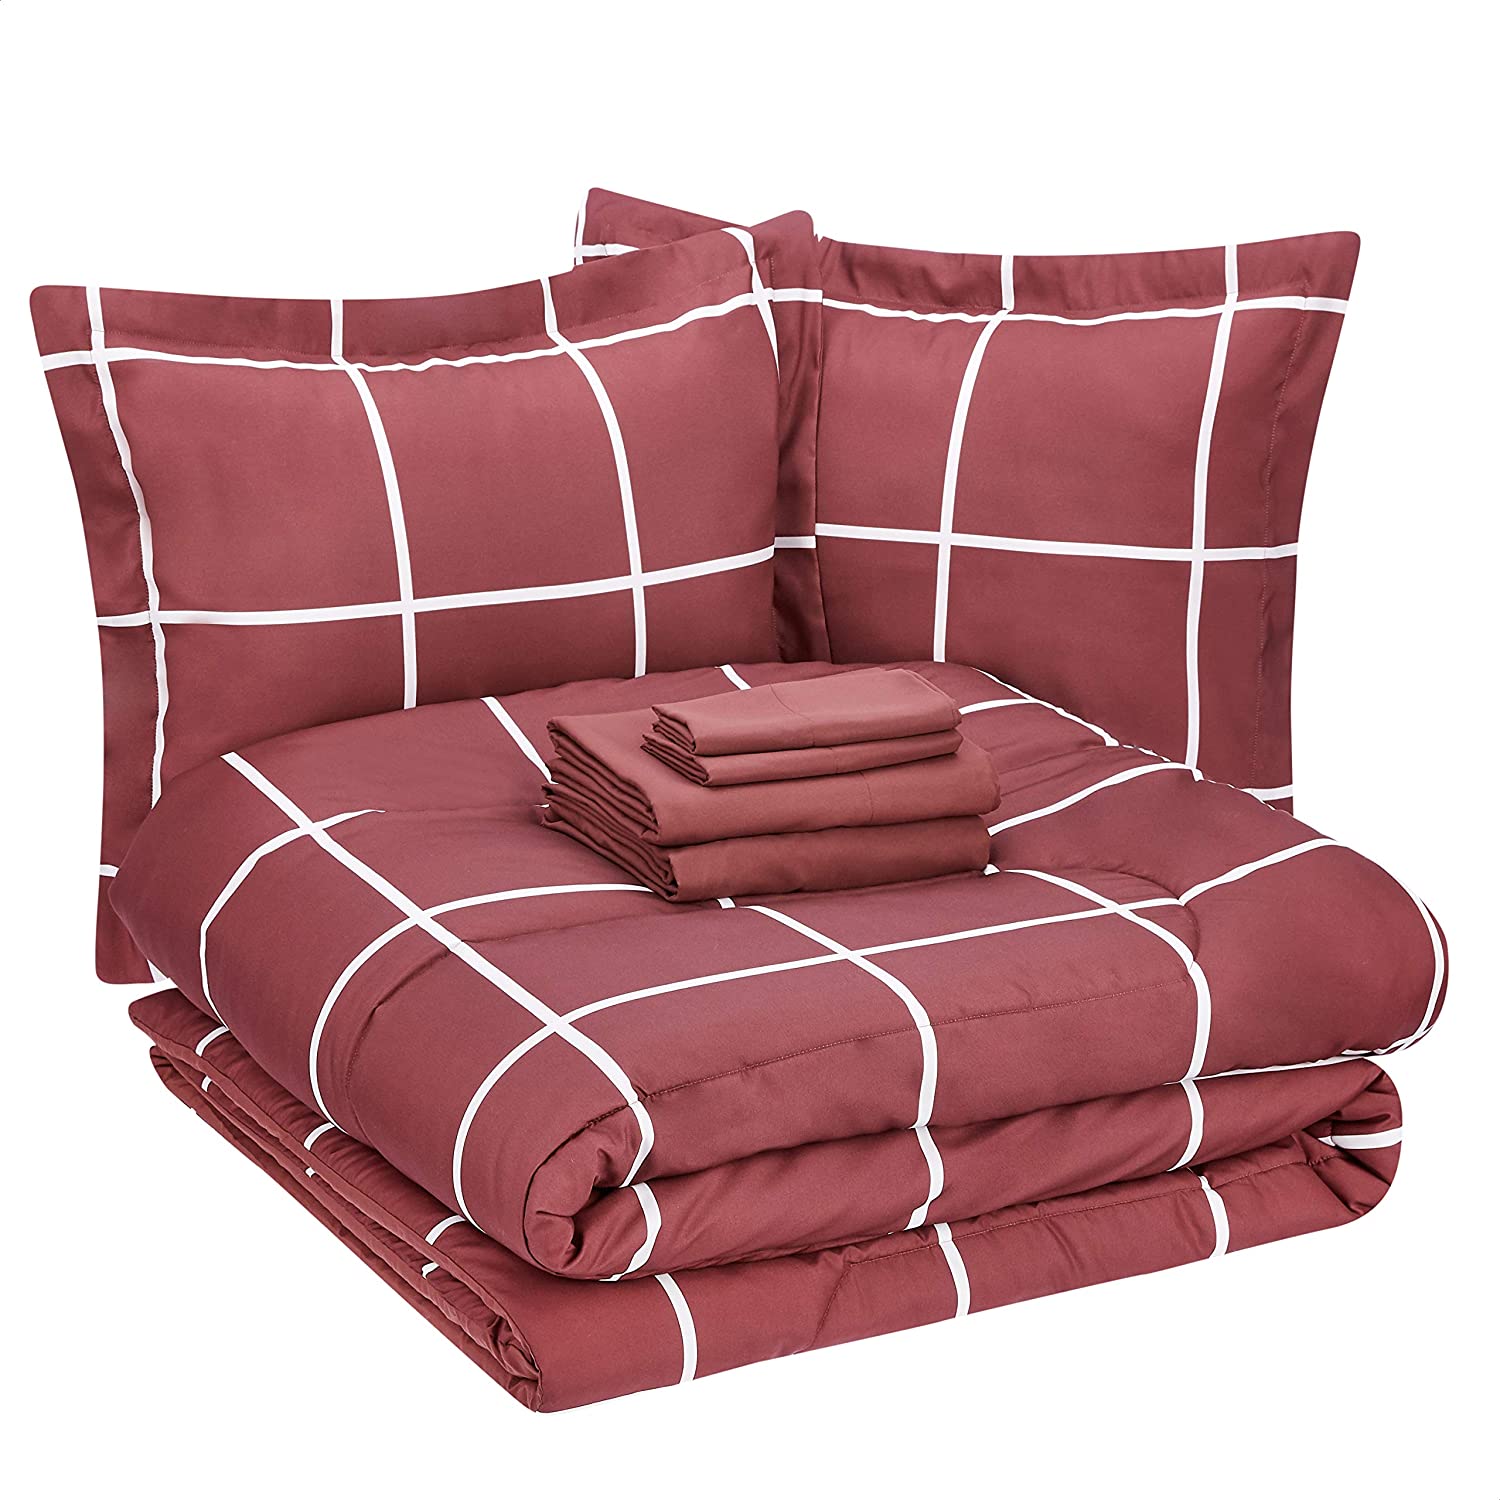 AmazonBasics OEKO-TEX Green Queen Comforter Set, 7-Piece